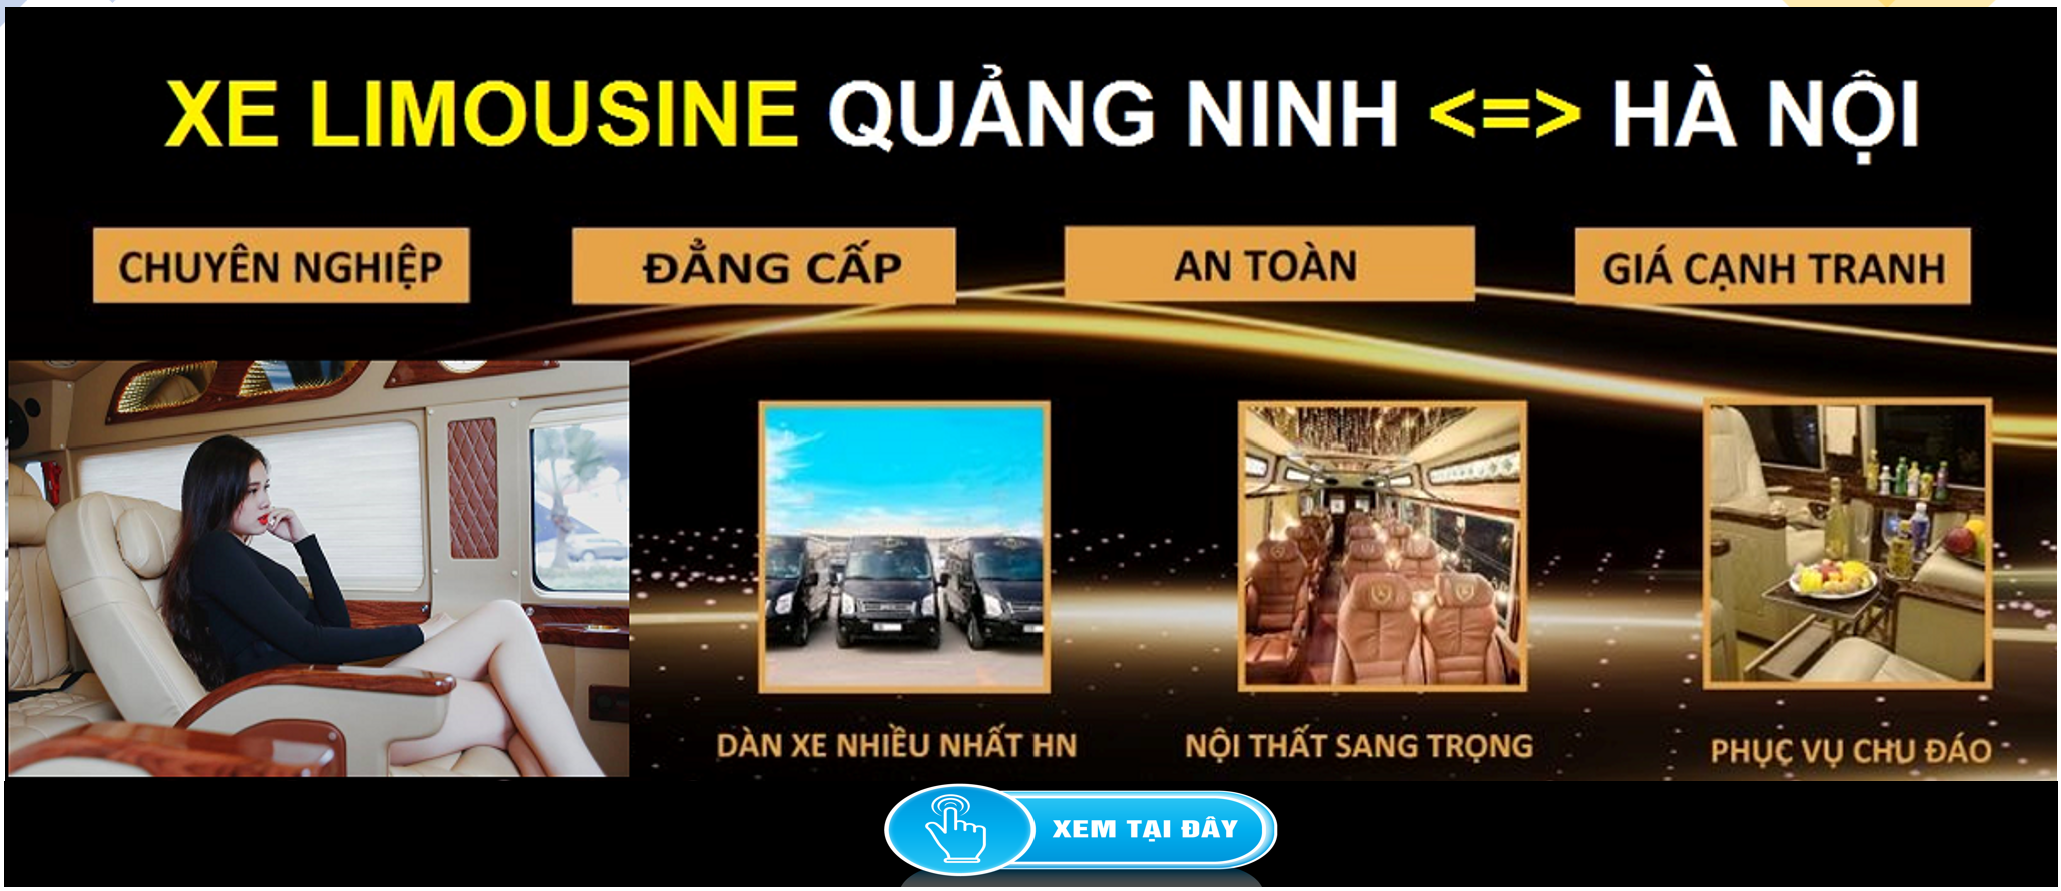 Xe Limousine Ha Noi Quang Ninh dua don tai nha 1d - Dịch vụ tư vấn bảo hiểm thân vỏ và dân sự dành cho ô tô